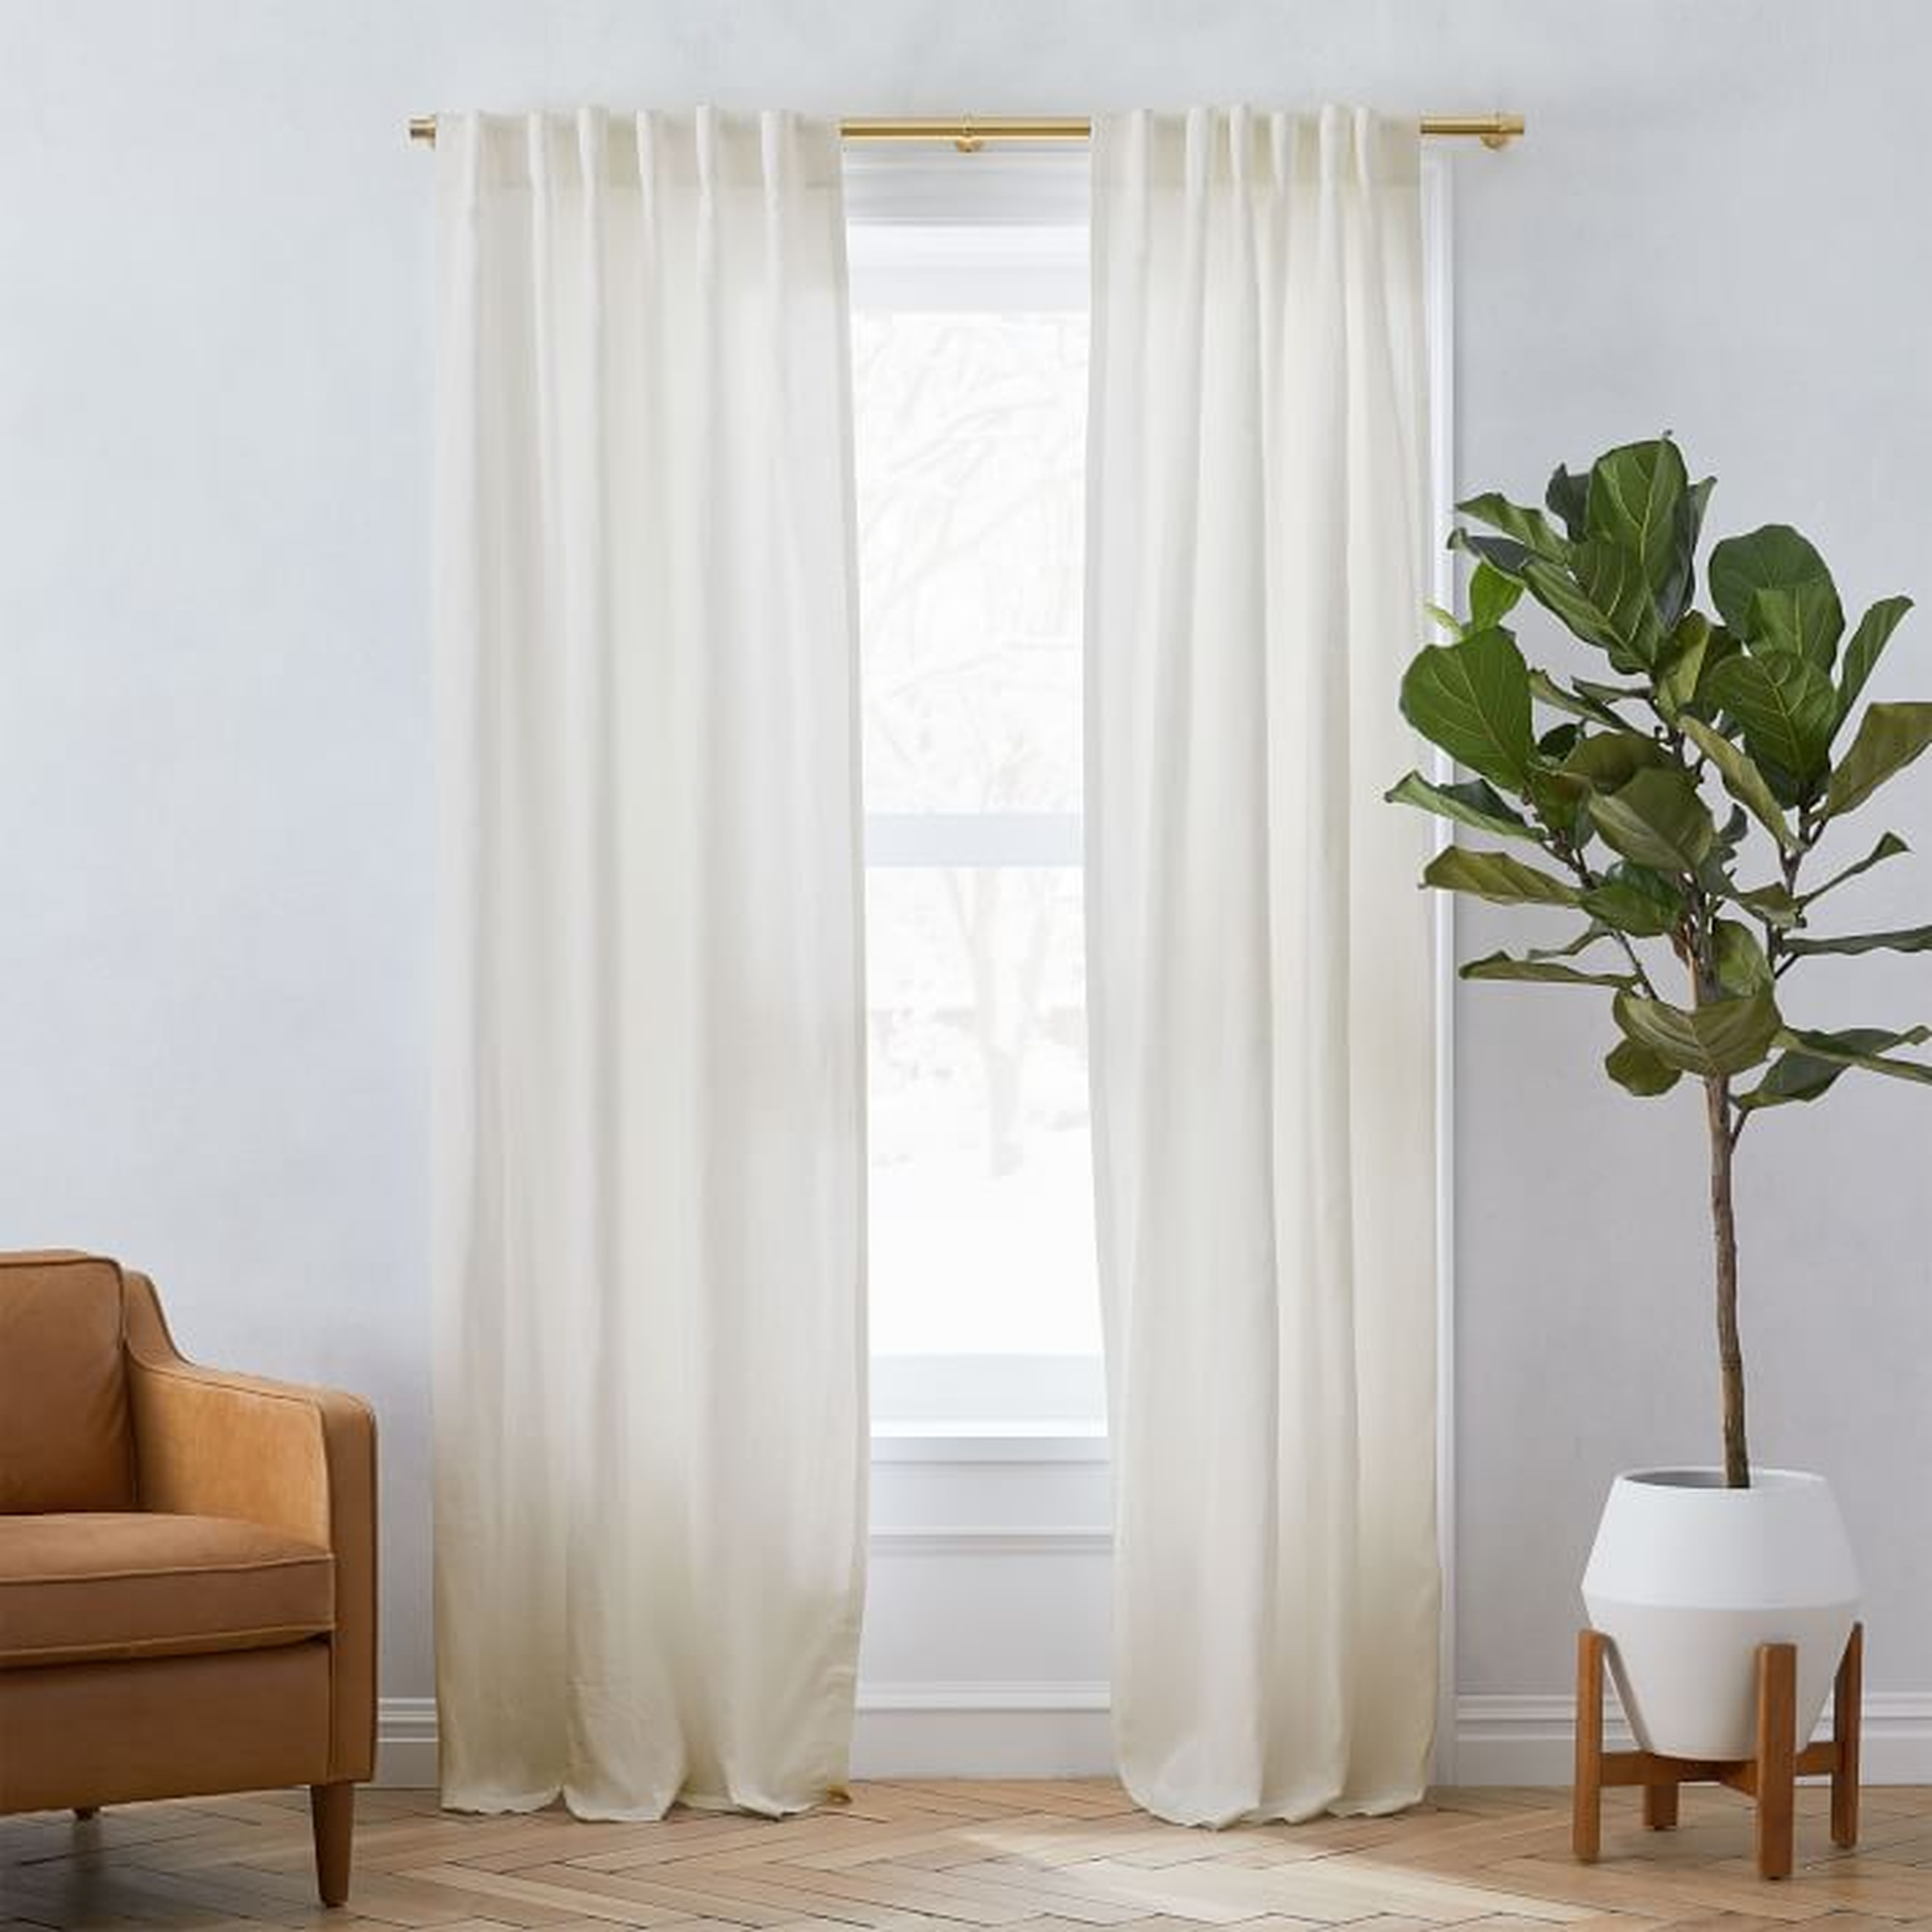 Sheer European Flax Linen Curtain - Natural Beige, 48"x108" set of 2 - West Elm